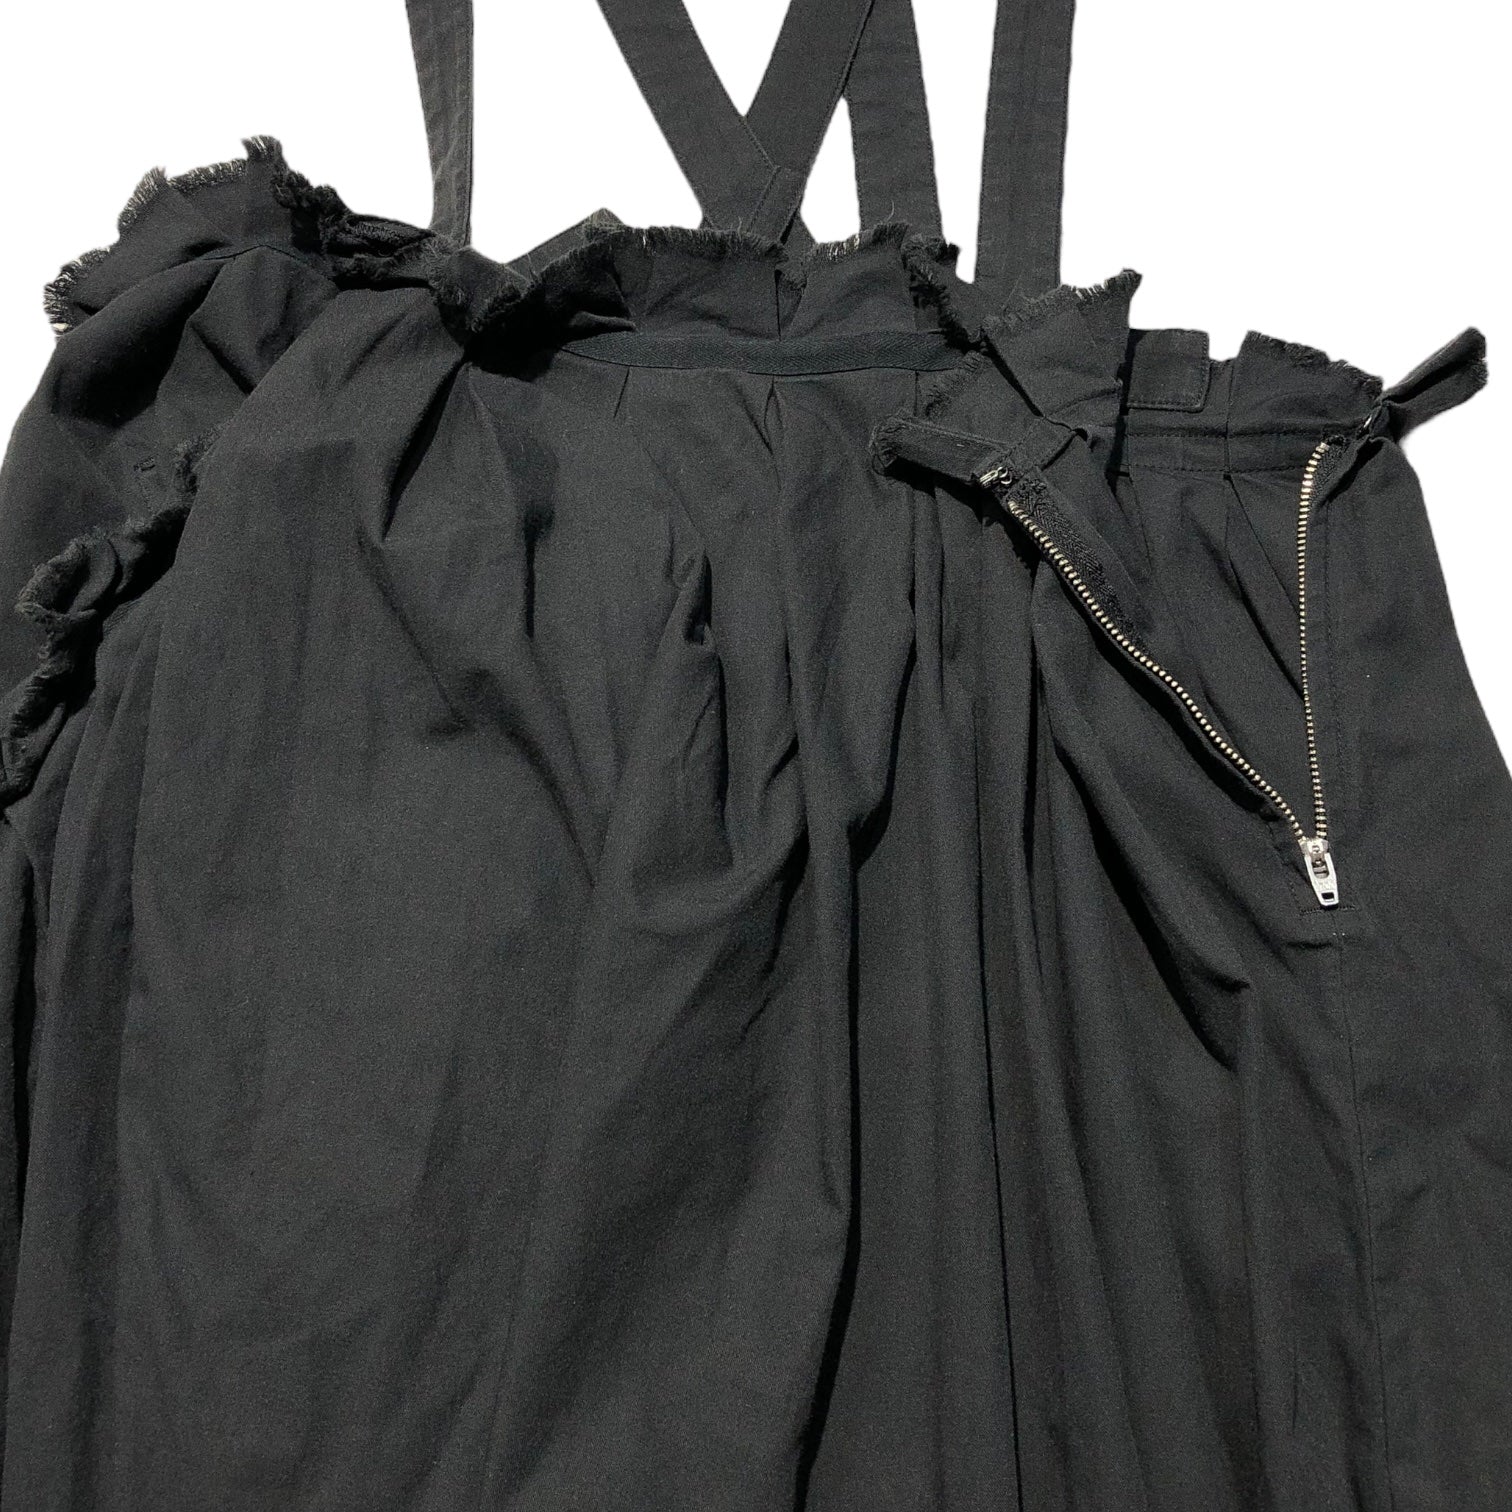 Y's(ワイズ) Raw-cut gathered jumper skirt 切りっぱなし ギャザー ジャンパー スカート YV-S09-009 2(M程度) ブラック サロペット